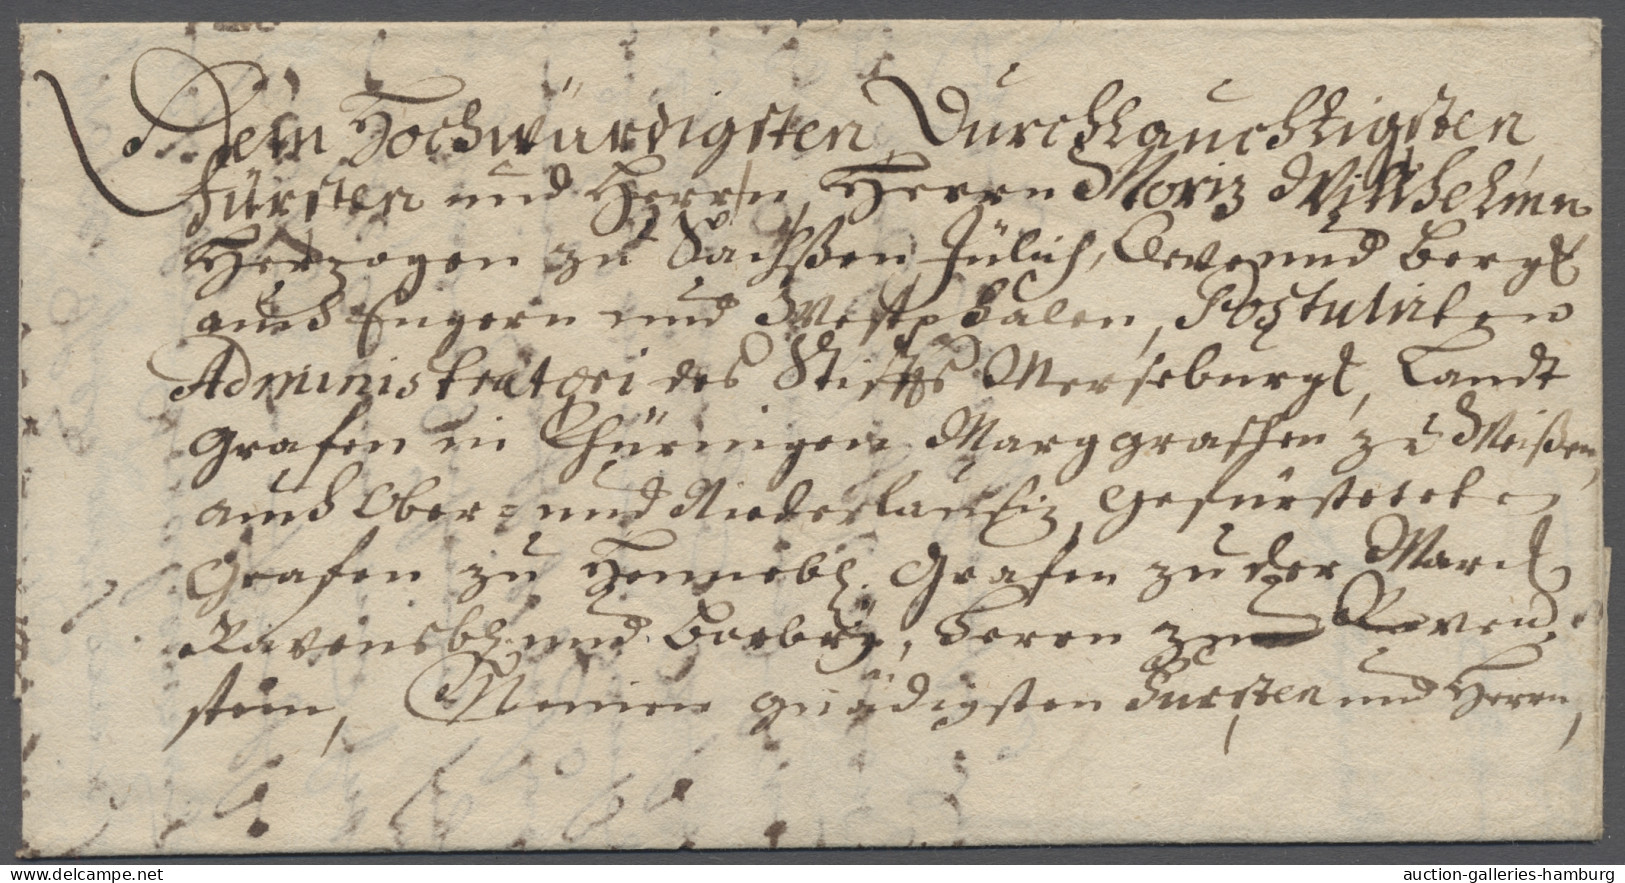 Brf. Sachsen - Vorphilatelie: 1727, Faltbrief Mit Inhalt An Herzog Moritz Wilhelm Von - Prephilately